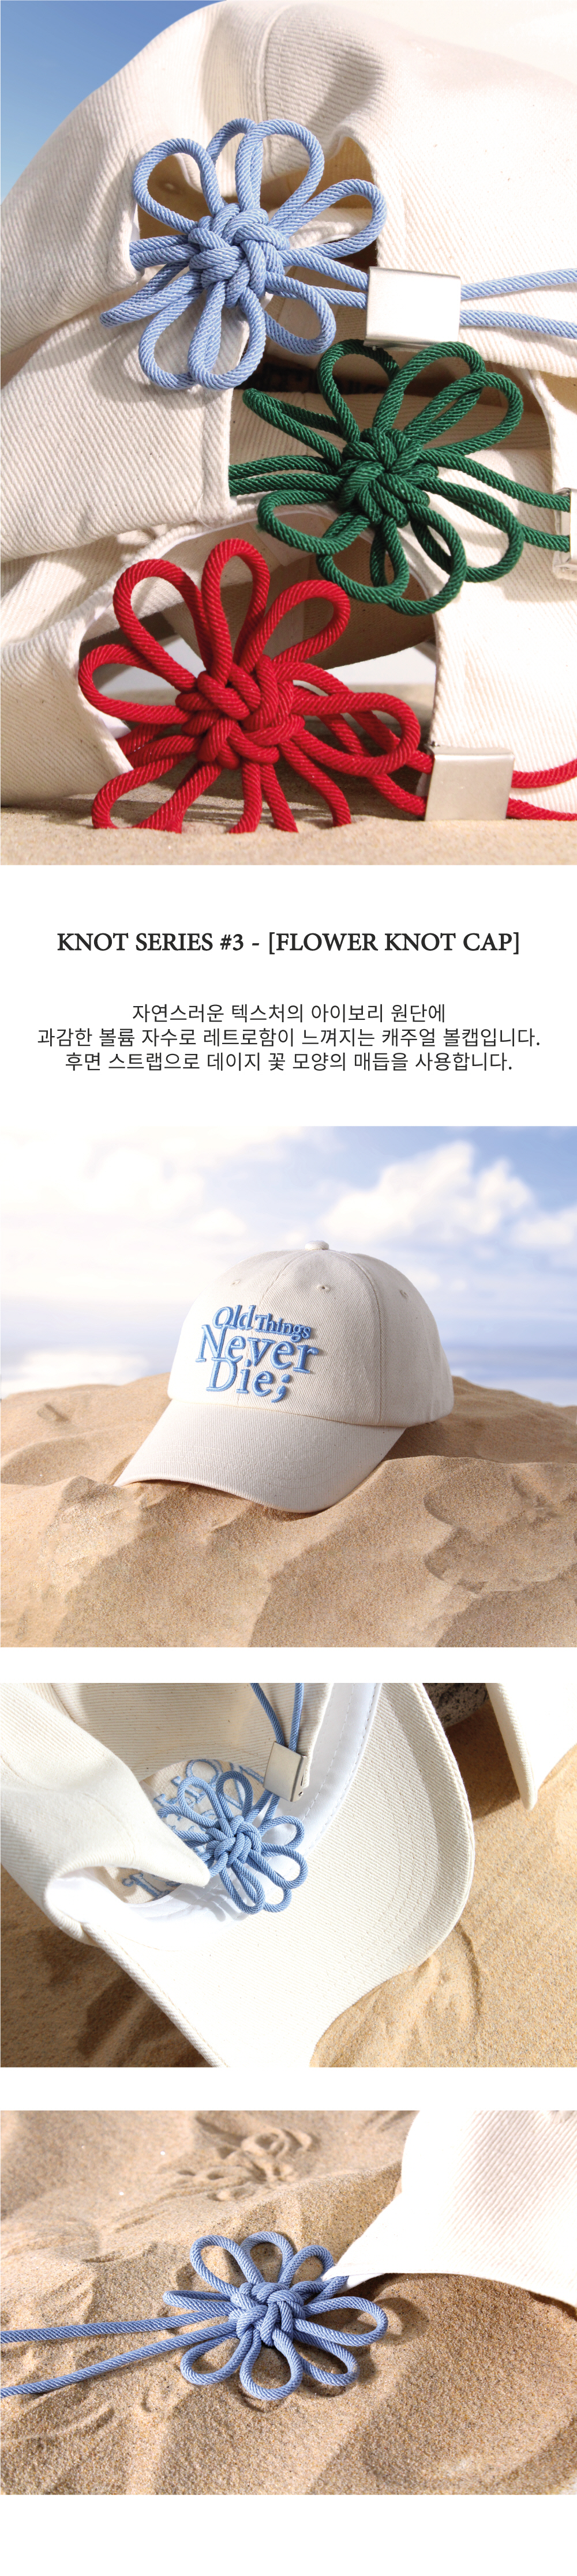 모래 위 놓여진 아이보리색 모자, 전면에 'old things never die;' 문구가 하늘색 자수로 입체적으로 새겨져 있다.